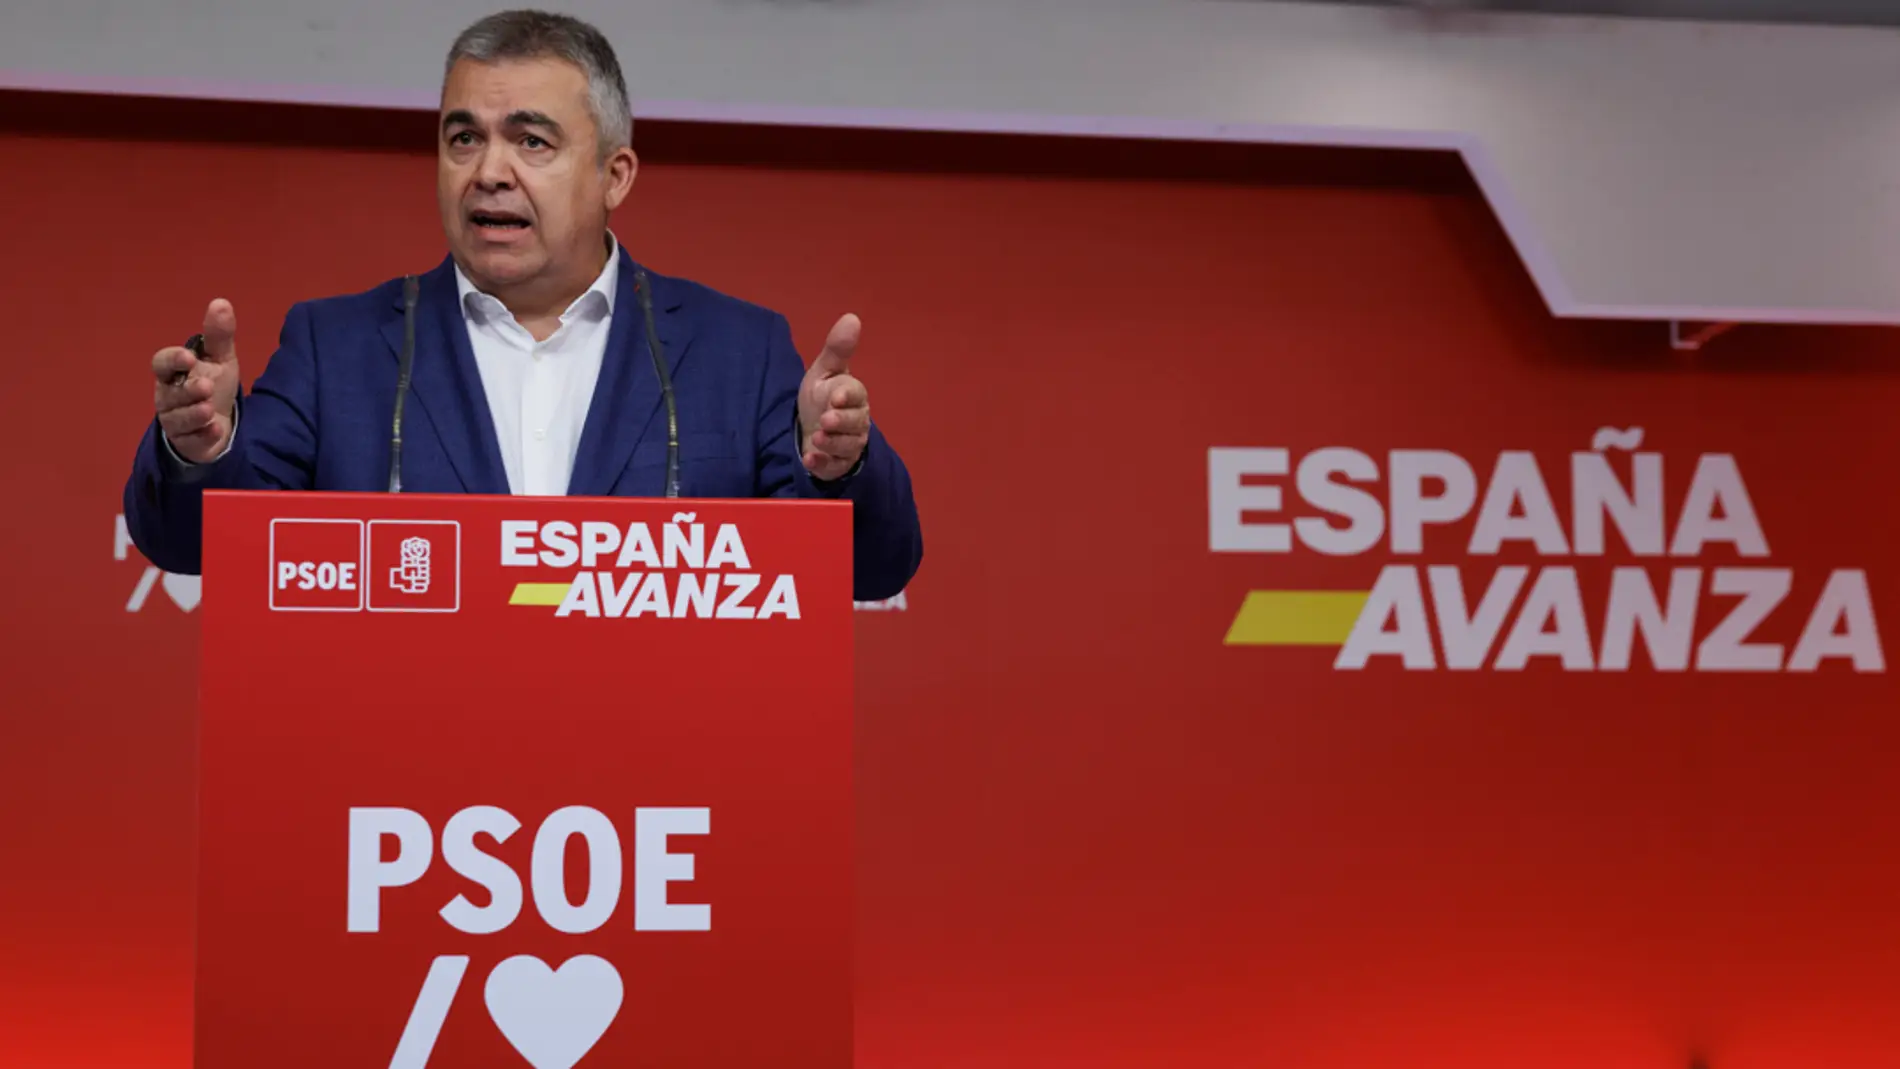 El secretario de organización del PSOE, Santos Cerdán, ofrece una rueda de prensa en la sede del PSOE en Madrid este lunes.